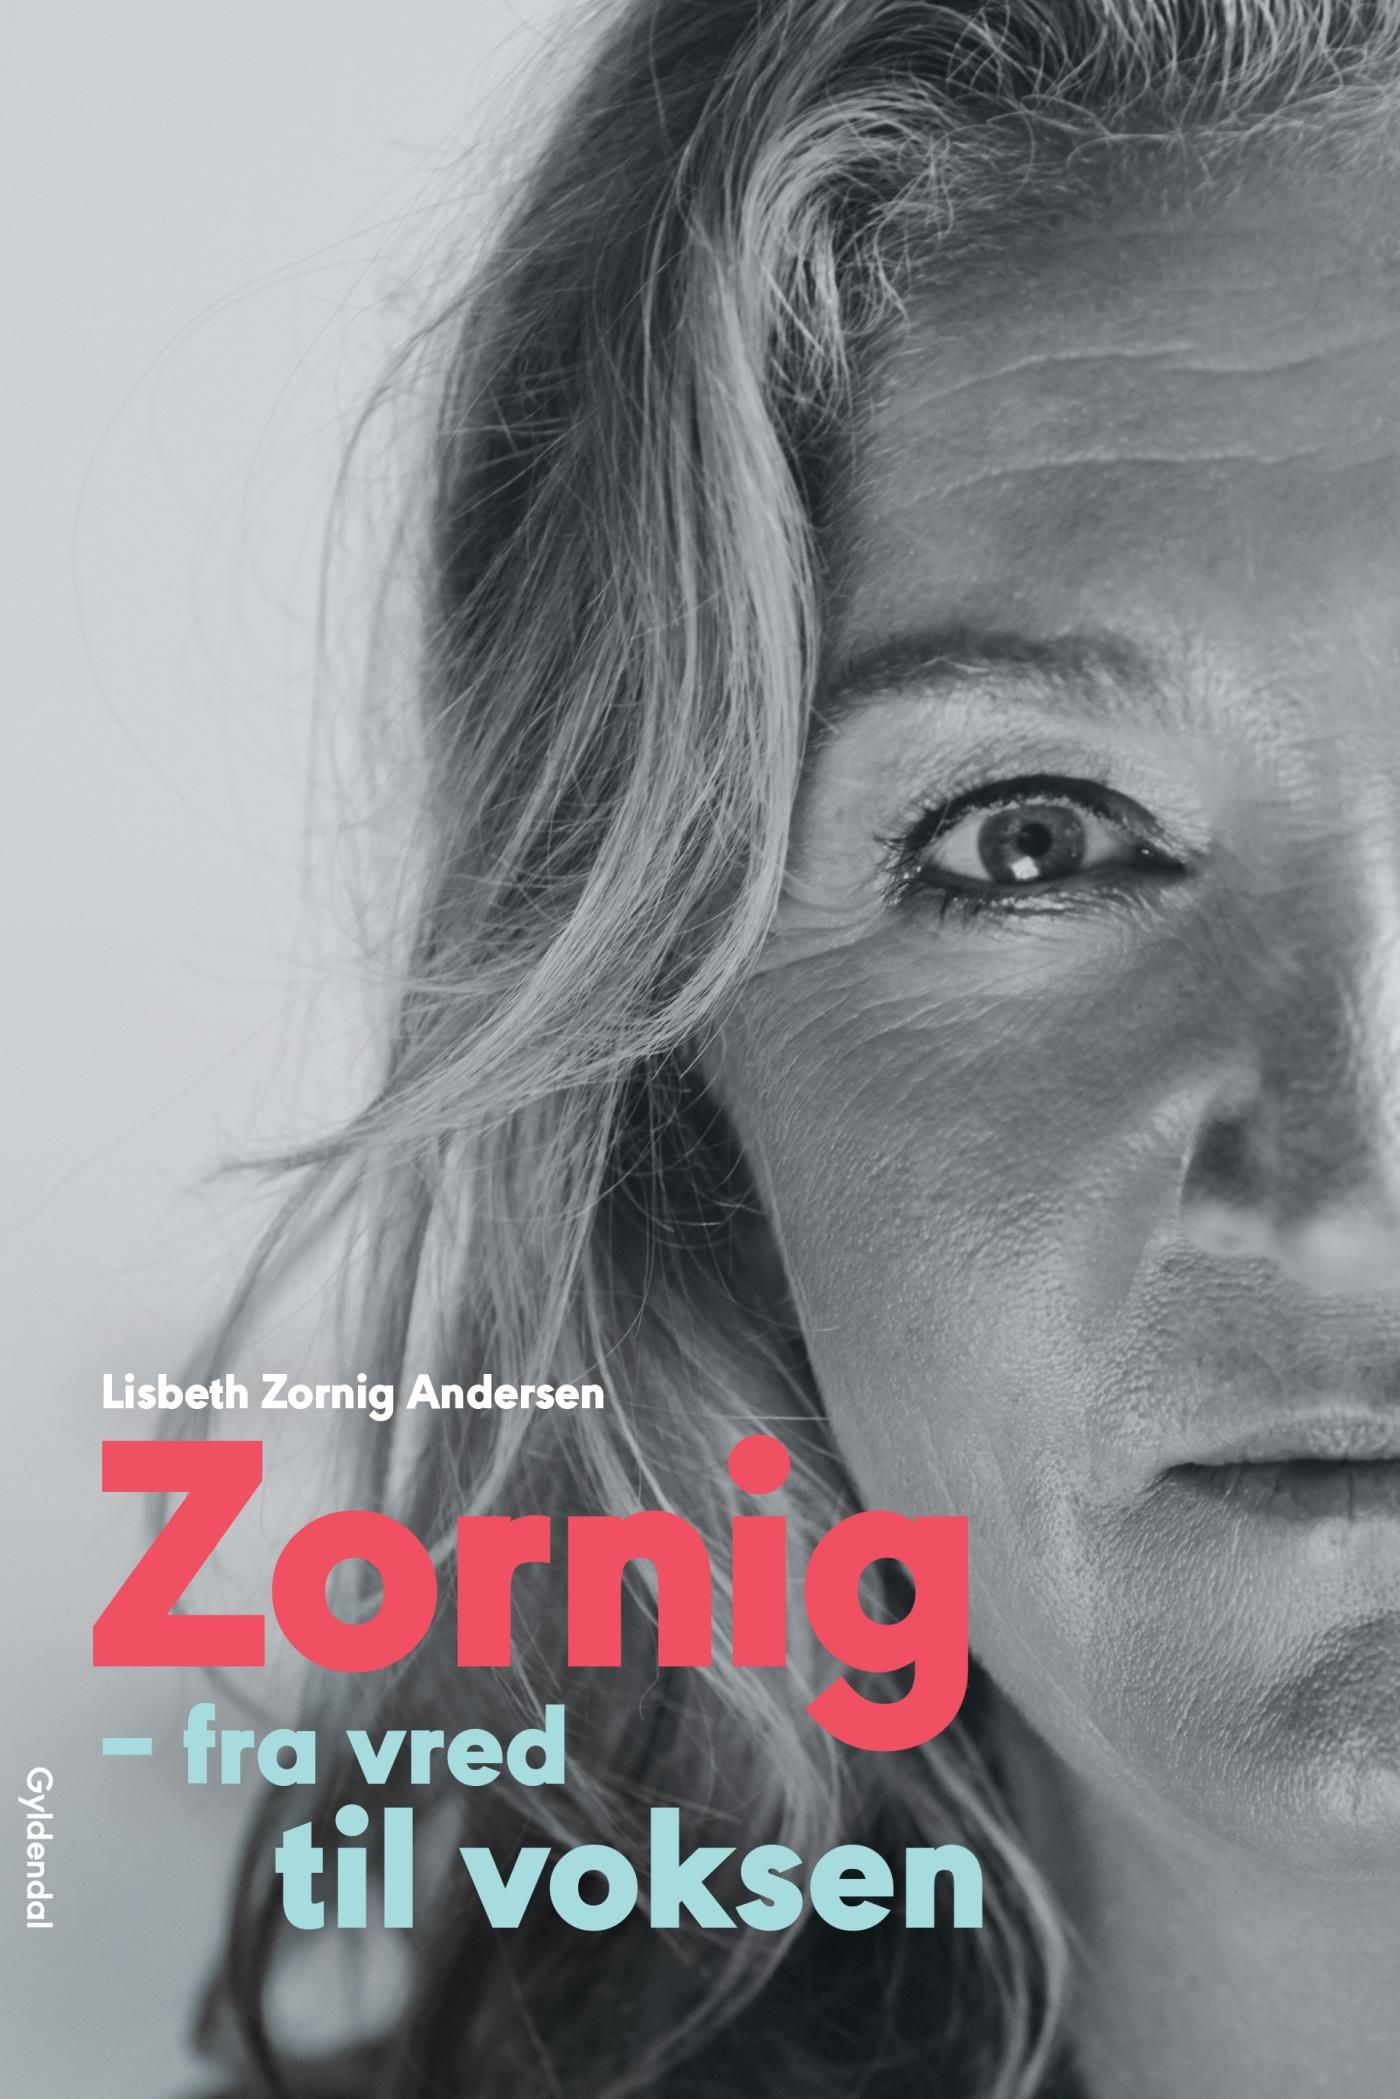 Zornig, eBook by Lisbeth Zornig Andersen